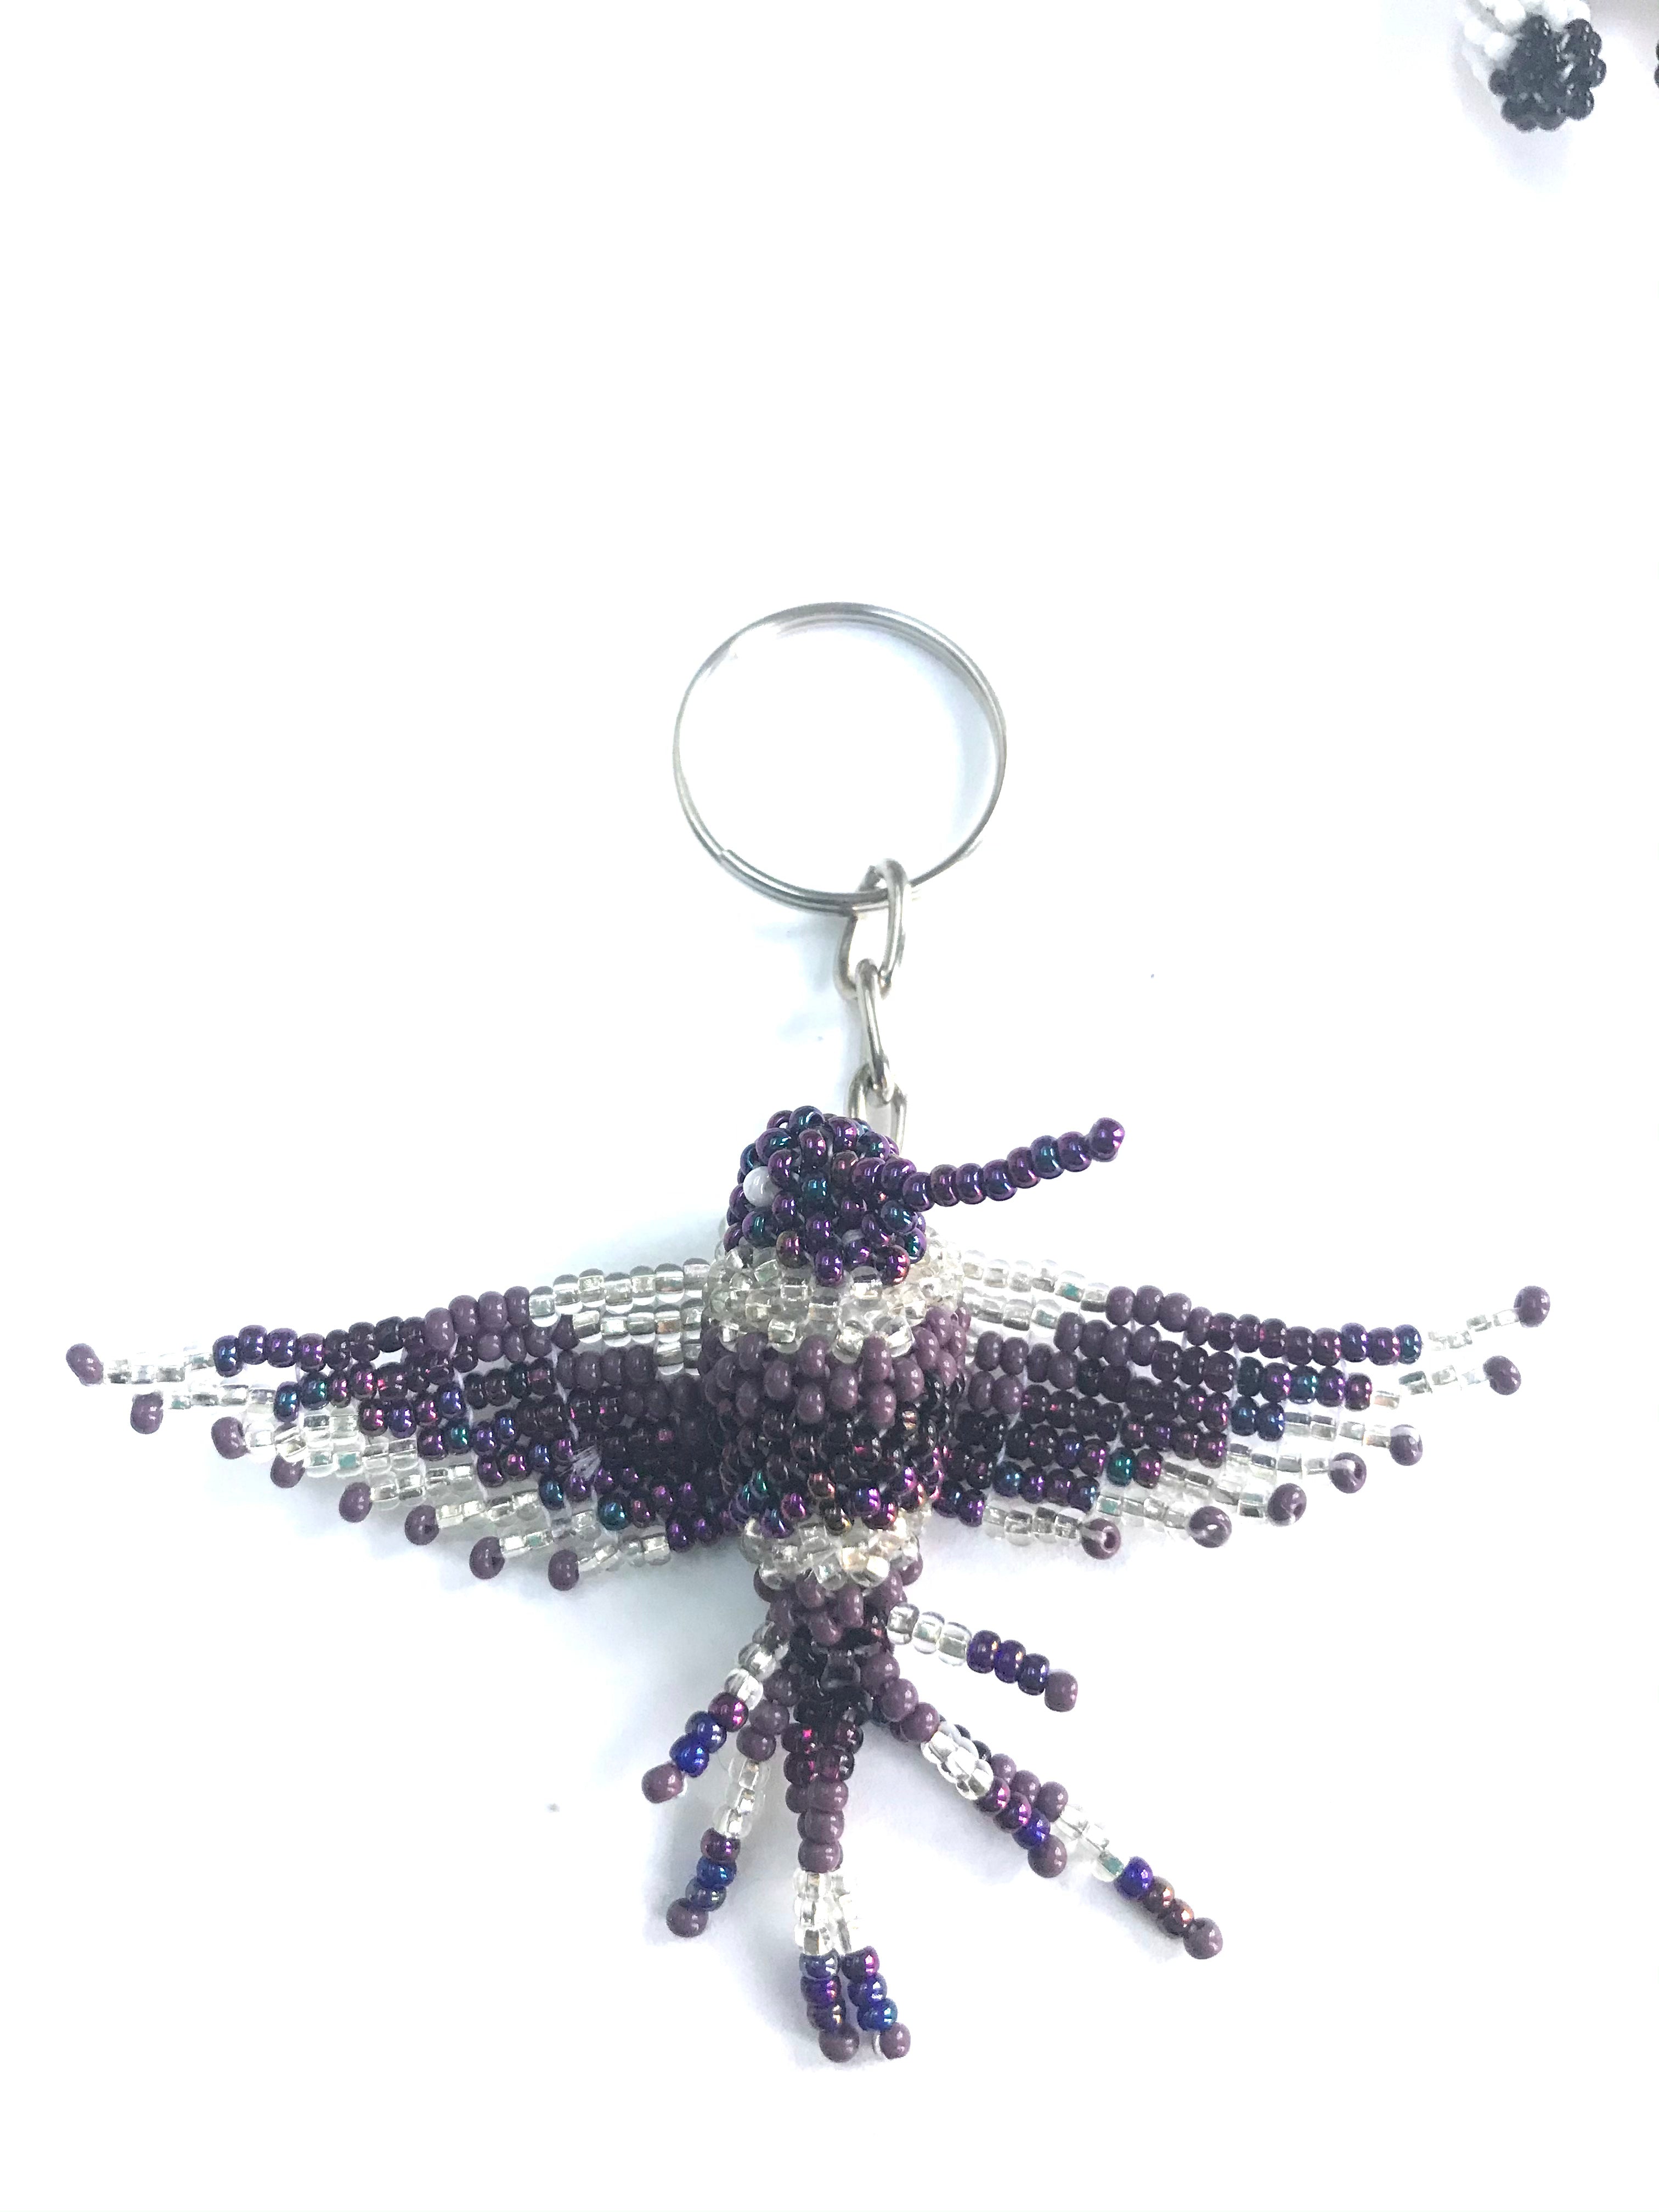 Hummingbird key ring